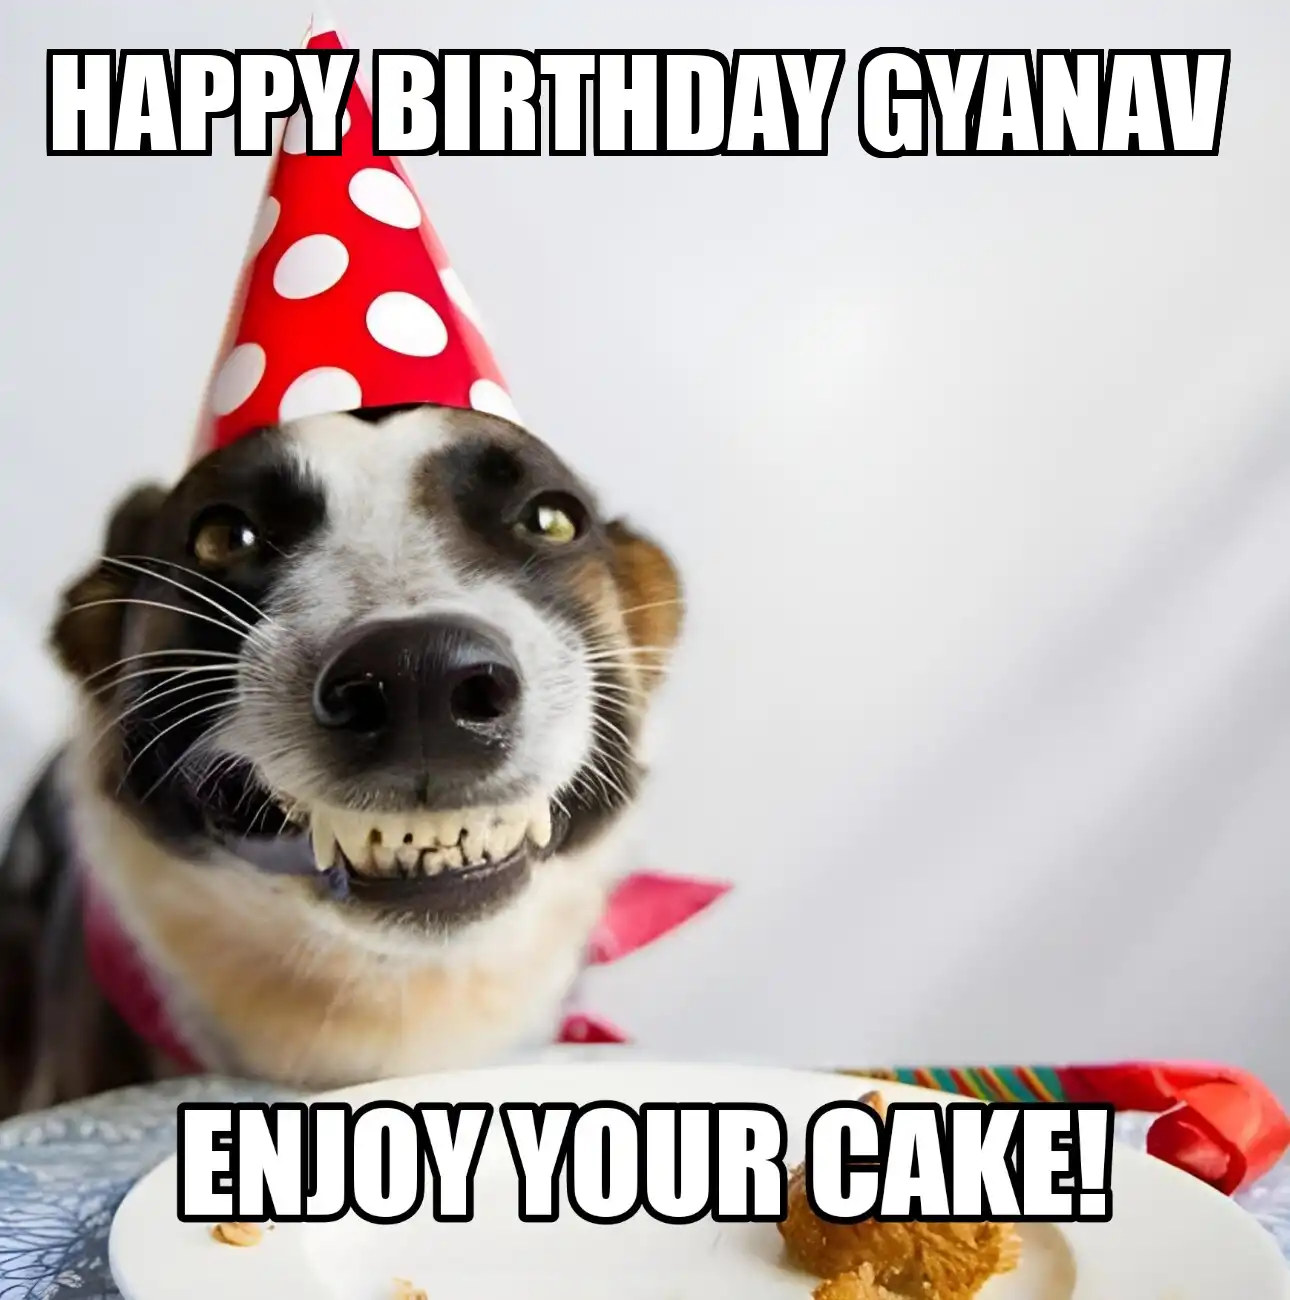 Happy Birthday Gyanav Enjoy Your Cake Dog Meme